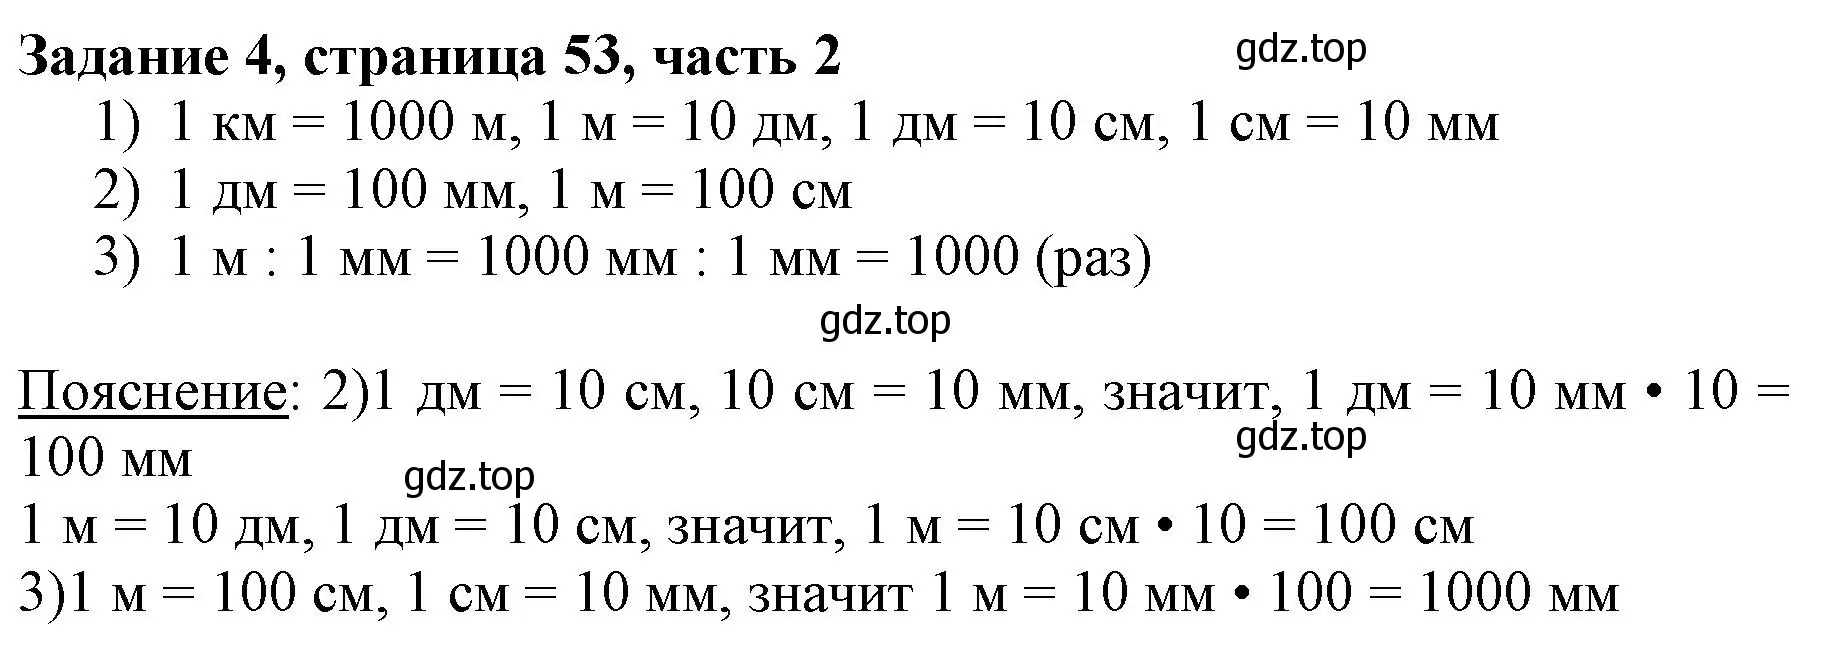 Решение номер 4 (страница 53) гдз по математике 3 класс Моро, Бантова, учебник 2 часть